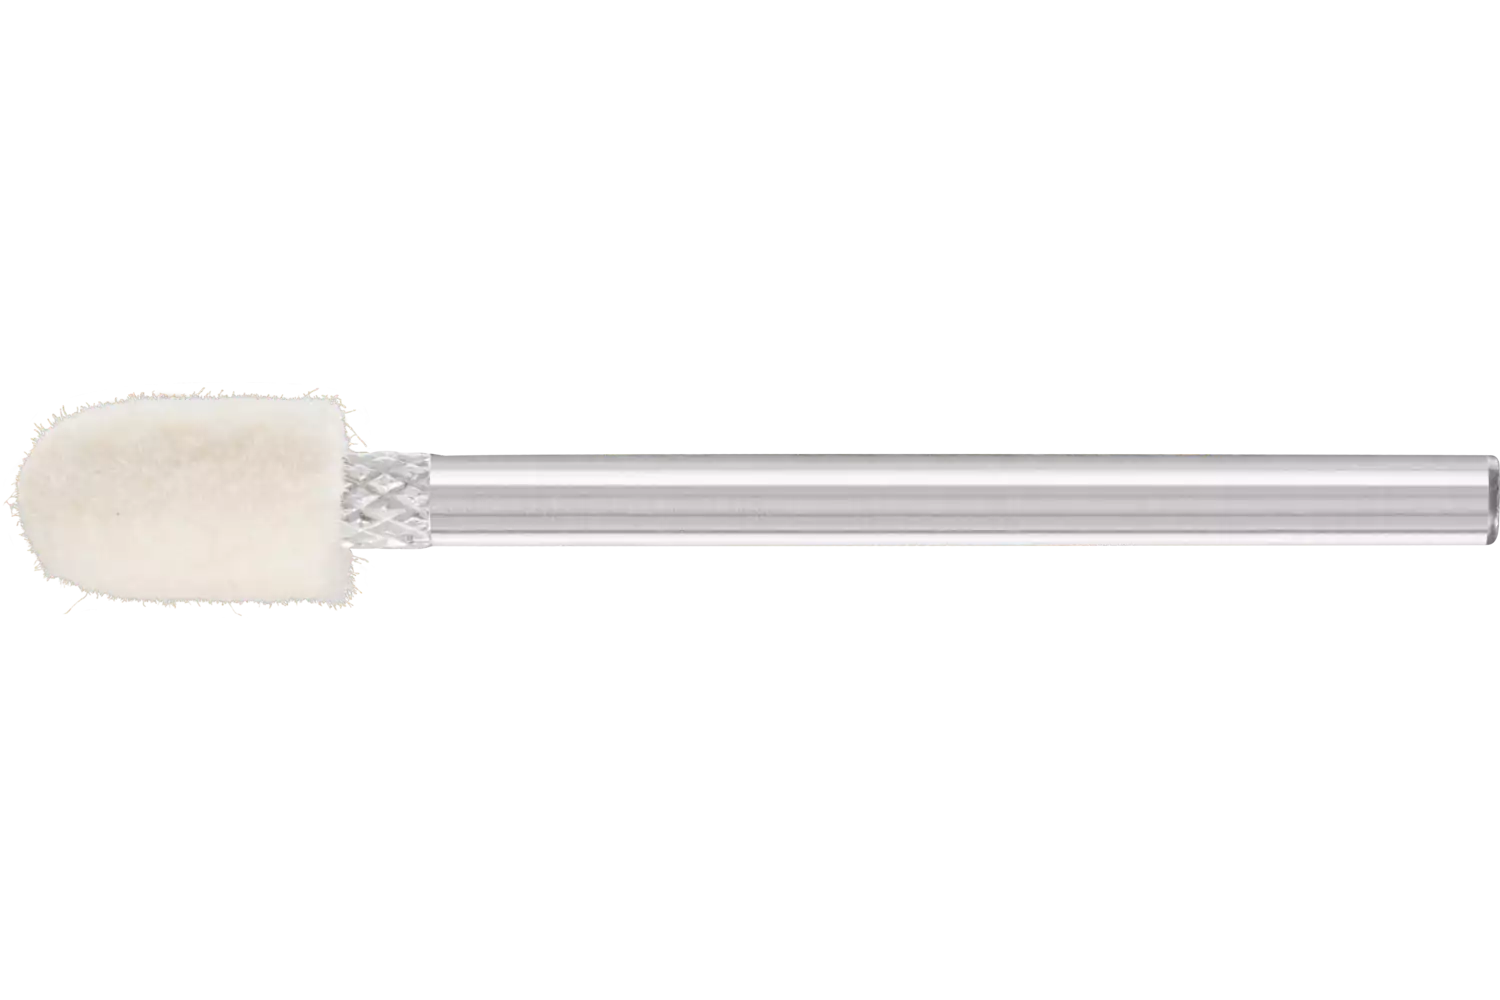 Feltri con gambo per lucidare medio-duri forma cilindrica con testa a sfera Ø 6x10 mm, gambo Ø 3 mm 1